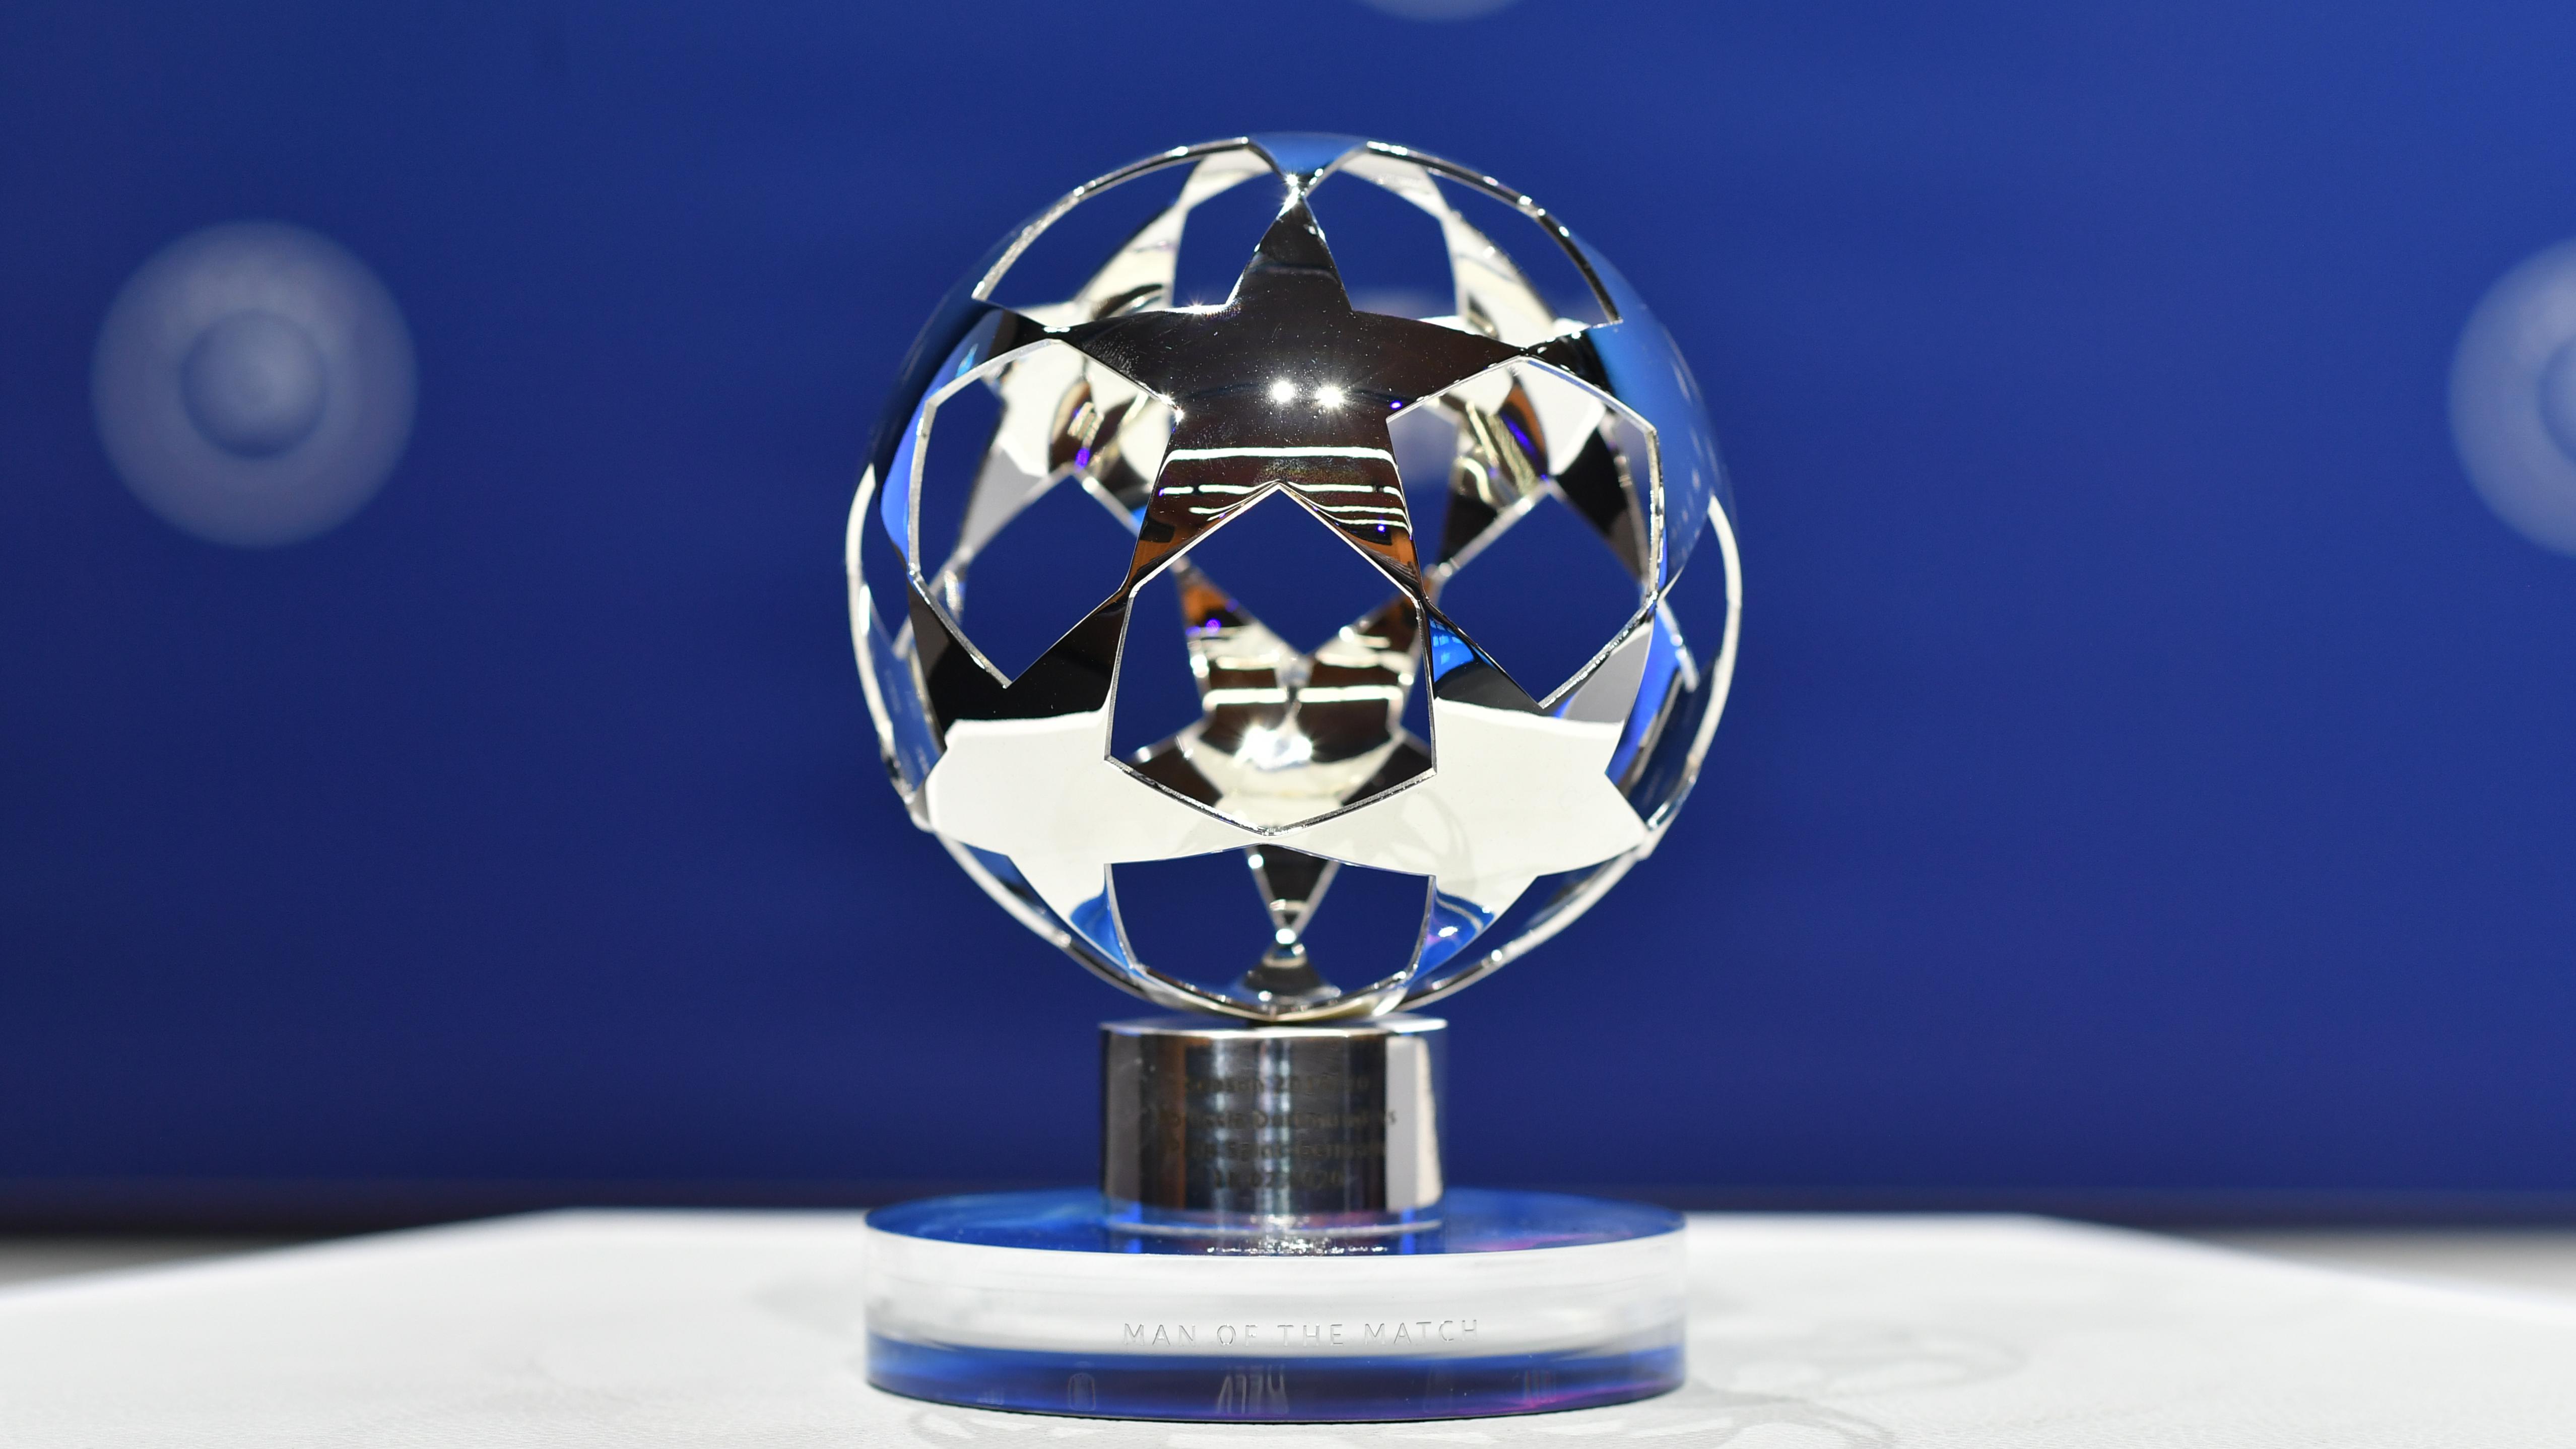 UEFA công bố giải thưởng mới toanh kể từ vòng 1/8 C1 mùa này